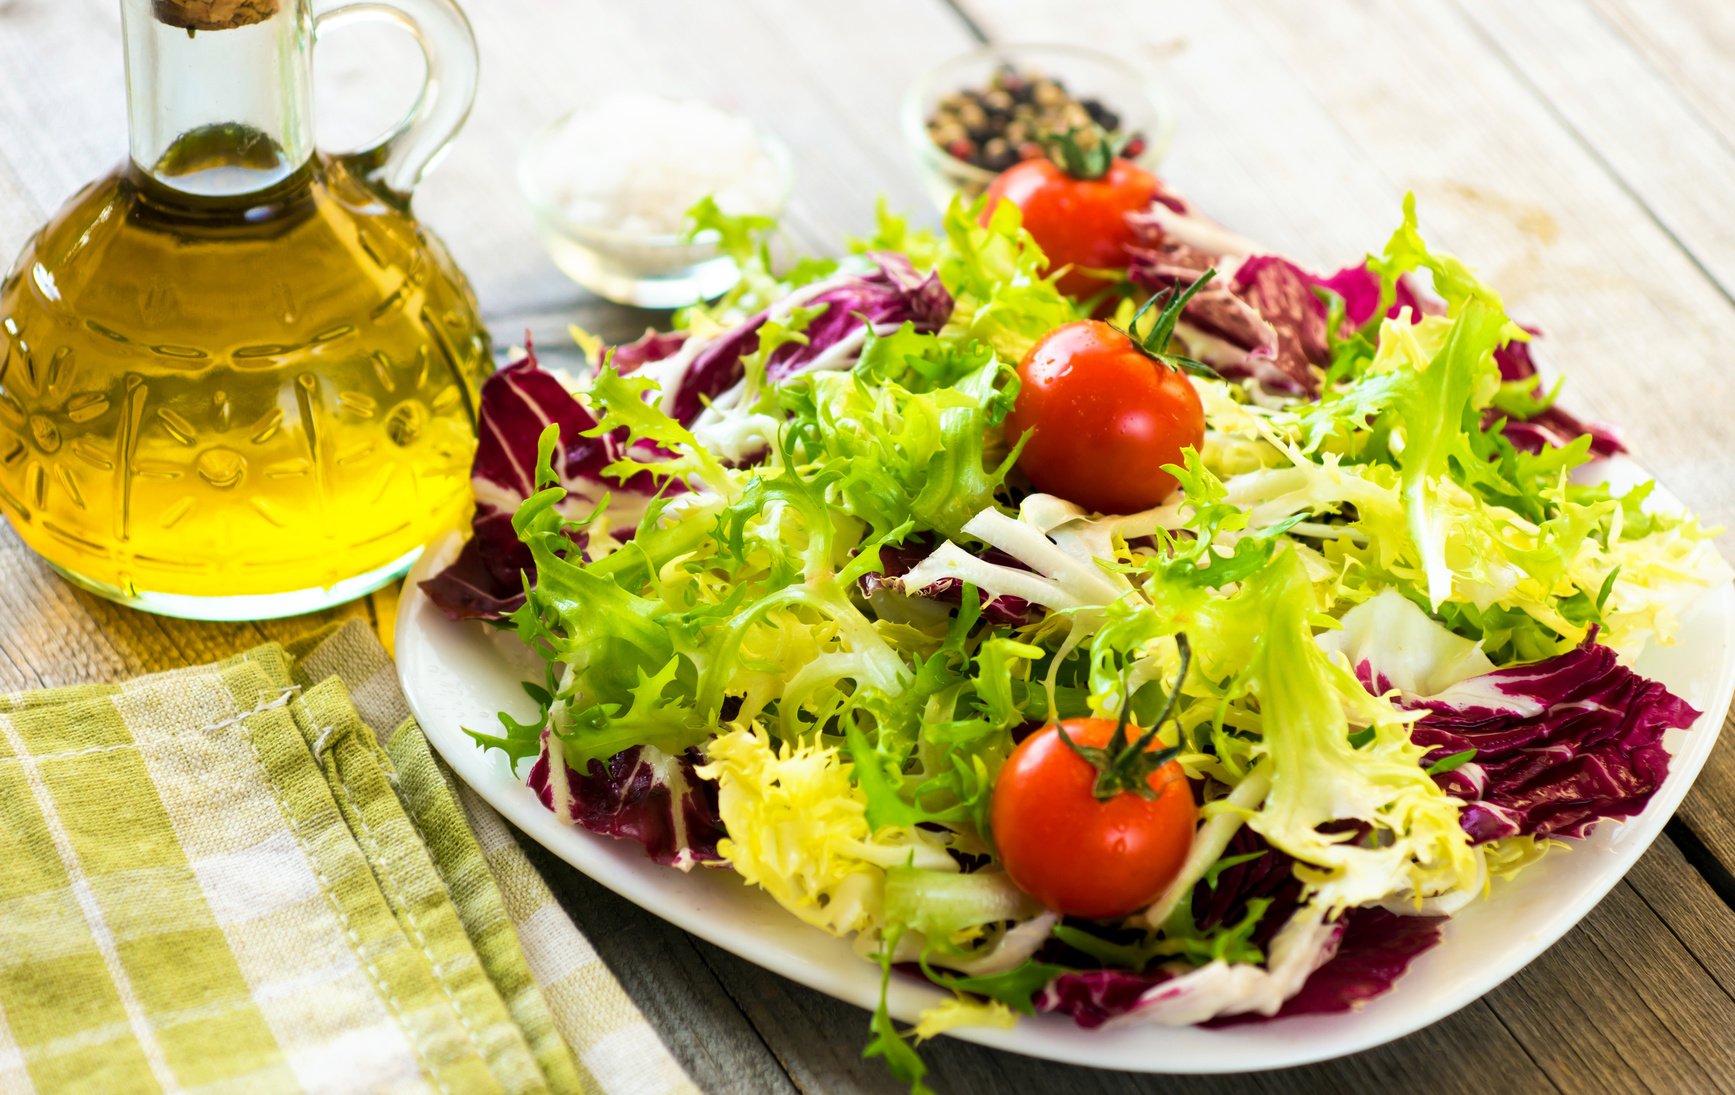 Салат с оливковым маслом калорийность